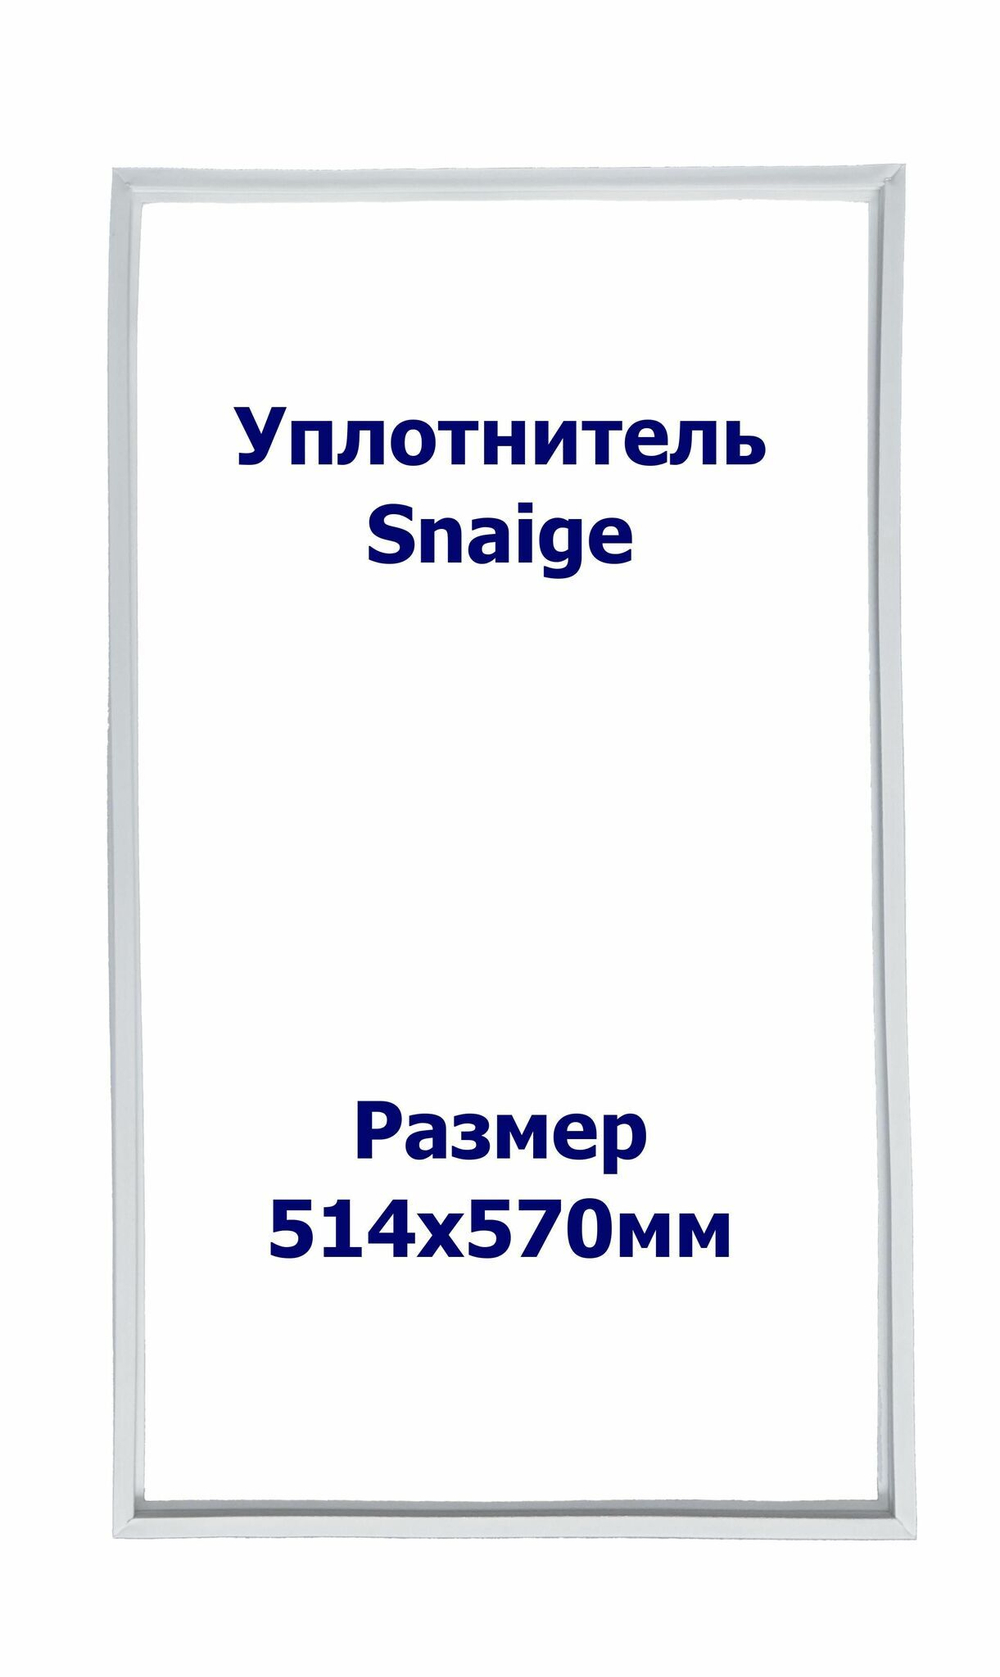 Уплотнитель Snaige RF 270. м.к., Размер - 514x570 мм. SK